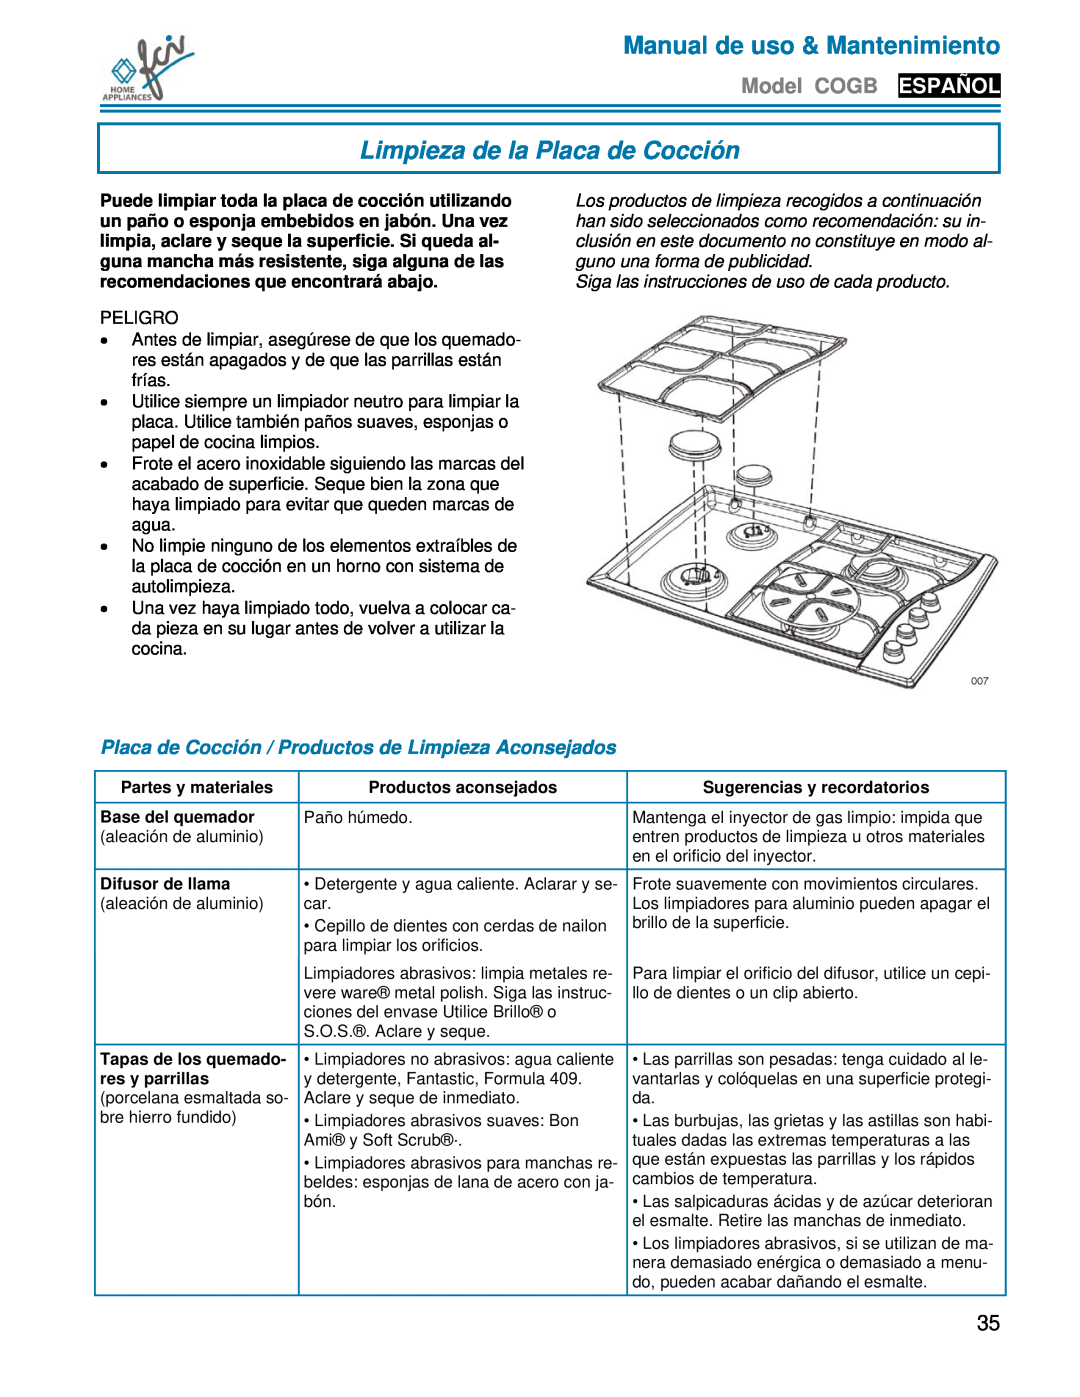 FCI Home Appliances COGB33062 manual Limpieza de la Placa de Cocción, Placa de Cocción / Productos de Limpieza Aconsejados 